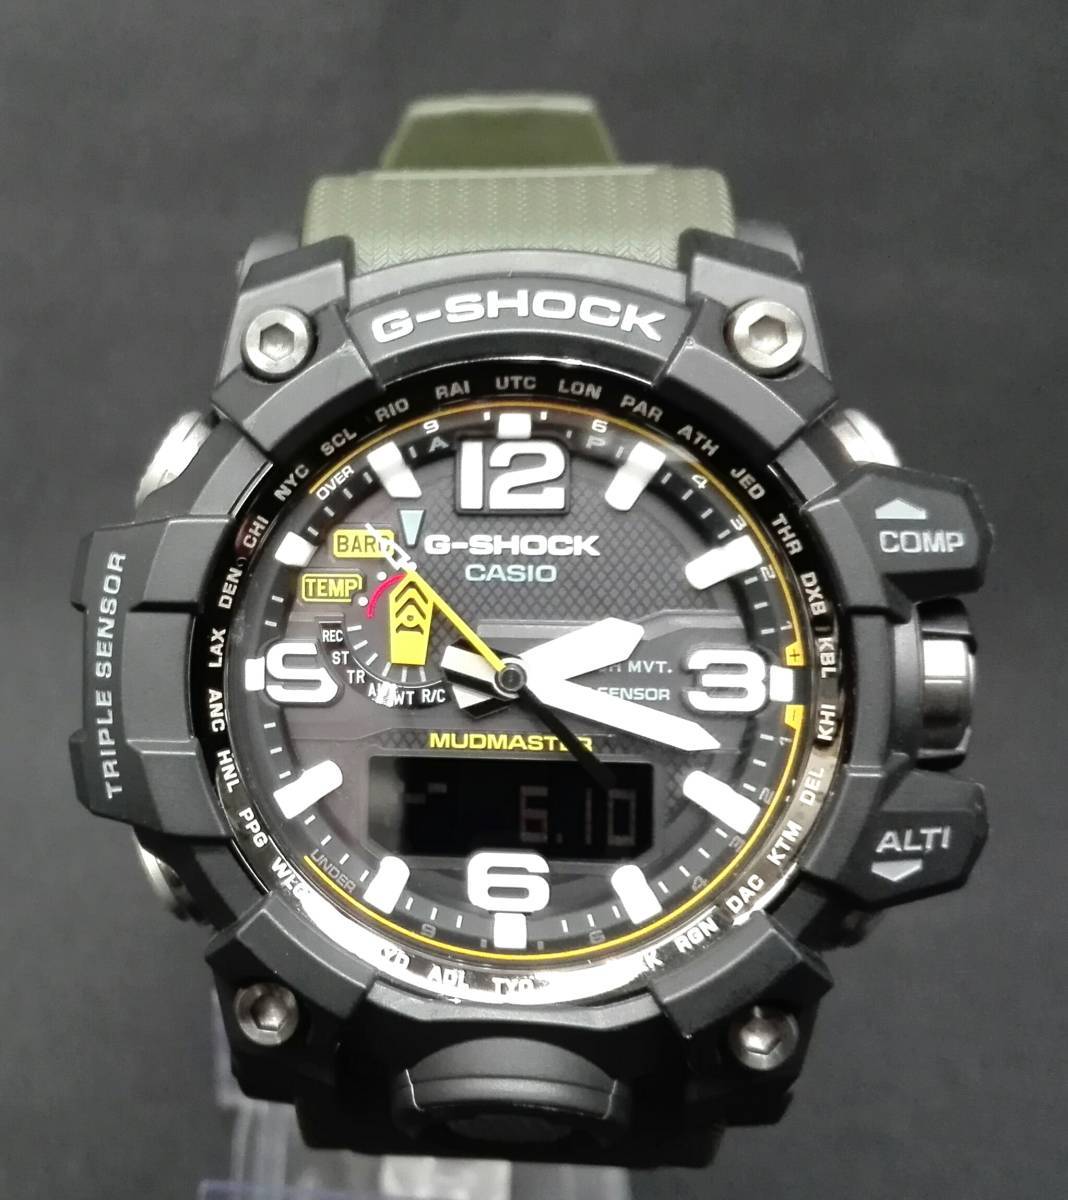 CASIO G-SHOCK MUDMASTER GWG-1000-1A3JF 腕時計 メンズ 電波ソーラー